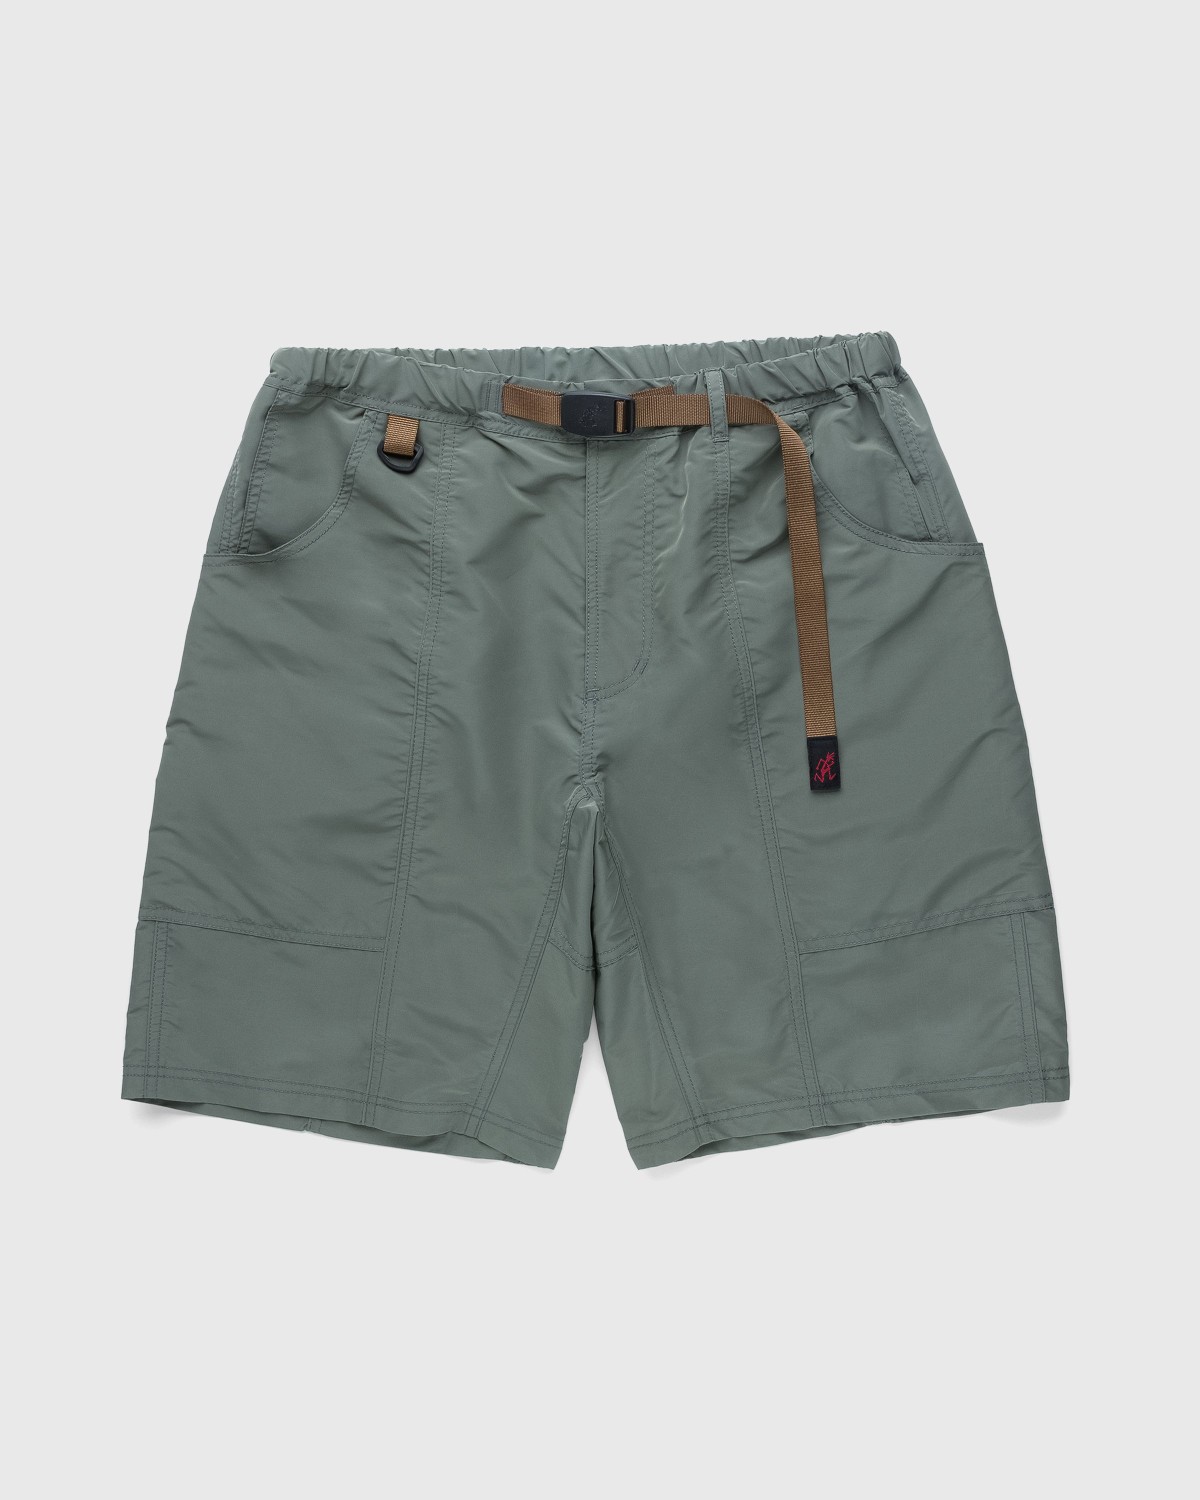 Gramicci – Shell Gear Shorts Slate Grey | Highsnobiety Shop